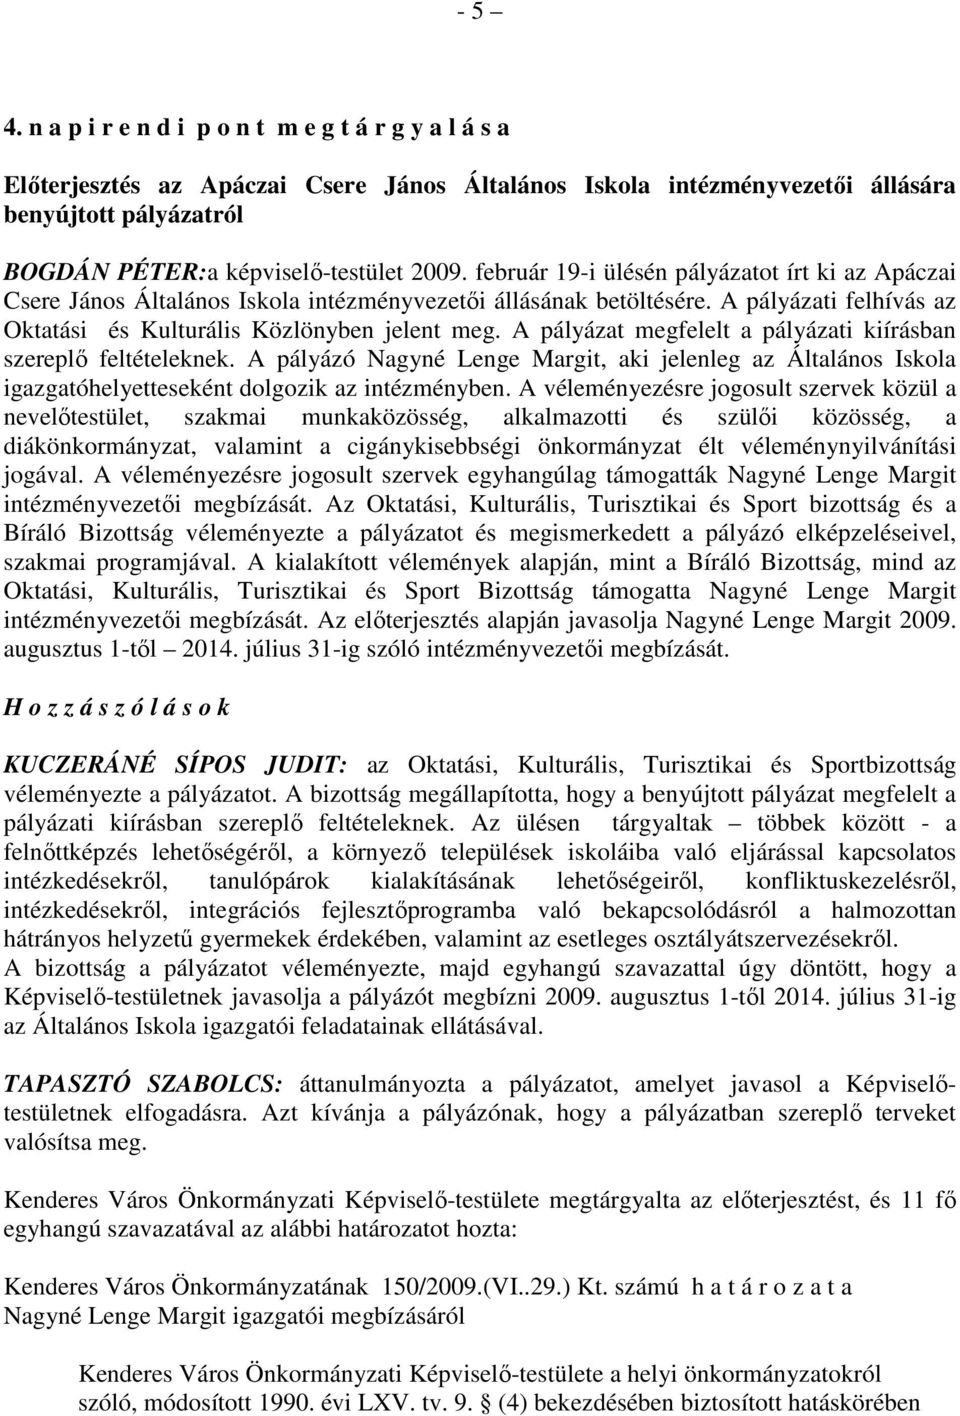 február 19-i ülésén pályázatot írt ki az Apáczai Csere János Általános Iskola intézményvezetıi állásának betöltésére. A pályázati felhívás az Oktatási és Kulturális Közlönyben jelent meg.